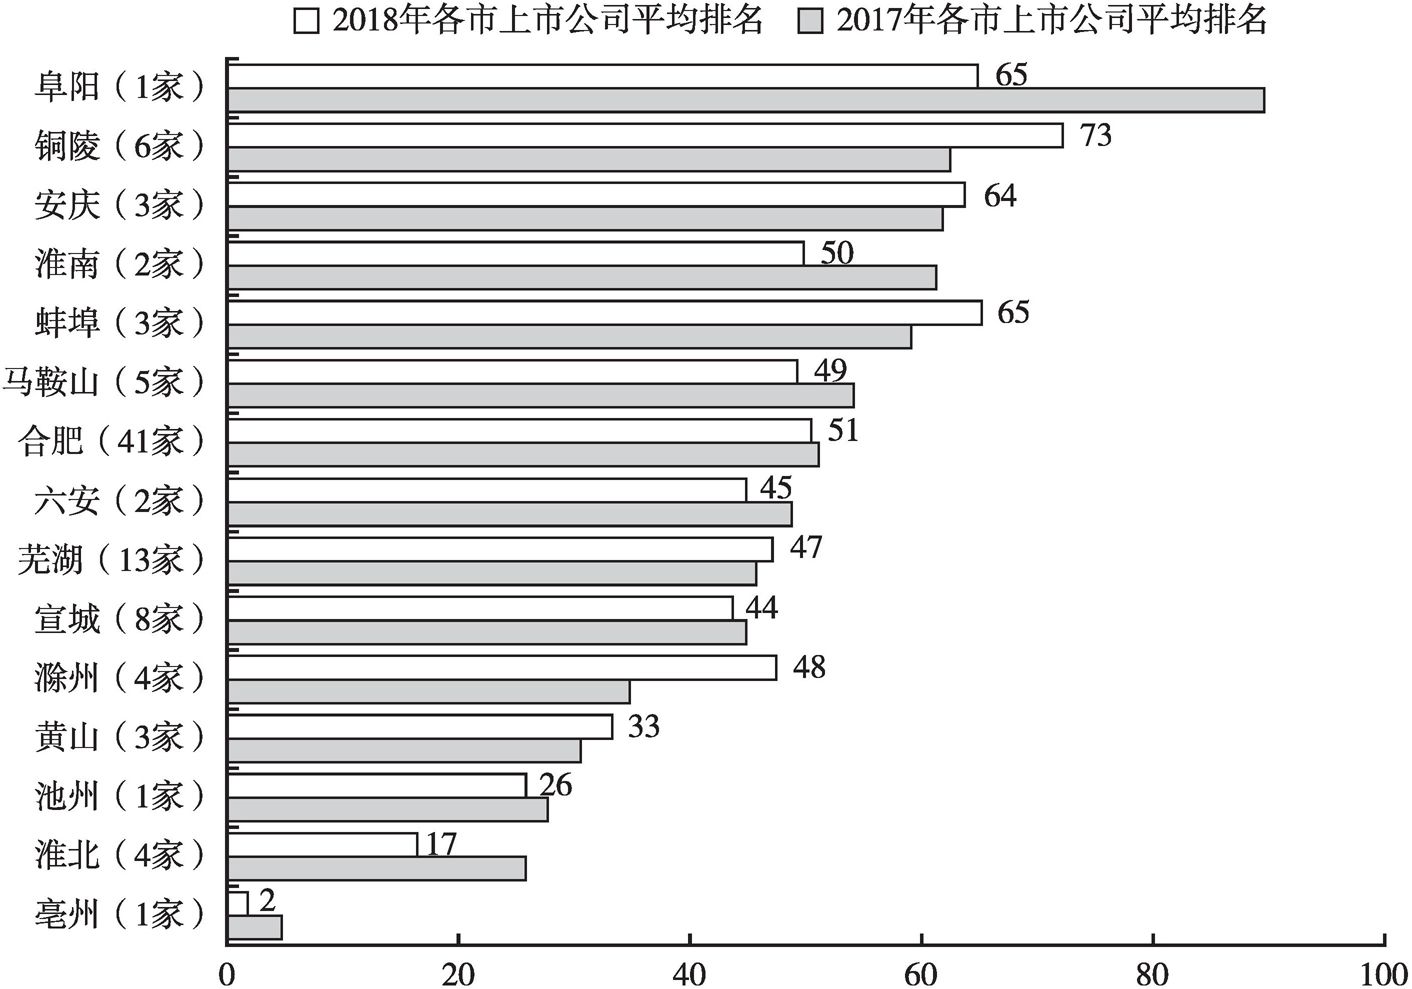 图15 安徽2017年和2018年各区域上市公司平均排名及变动情况